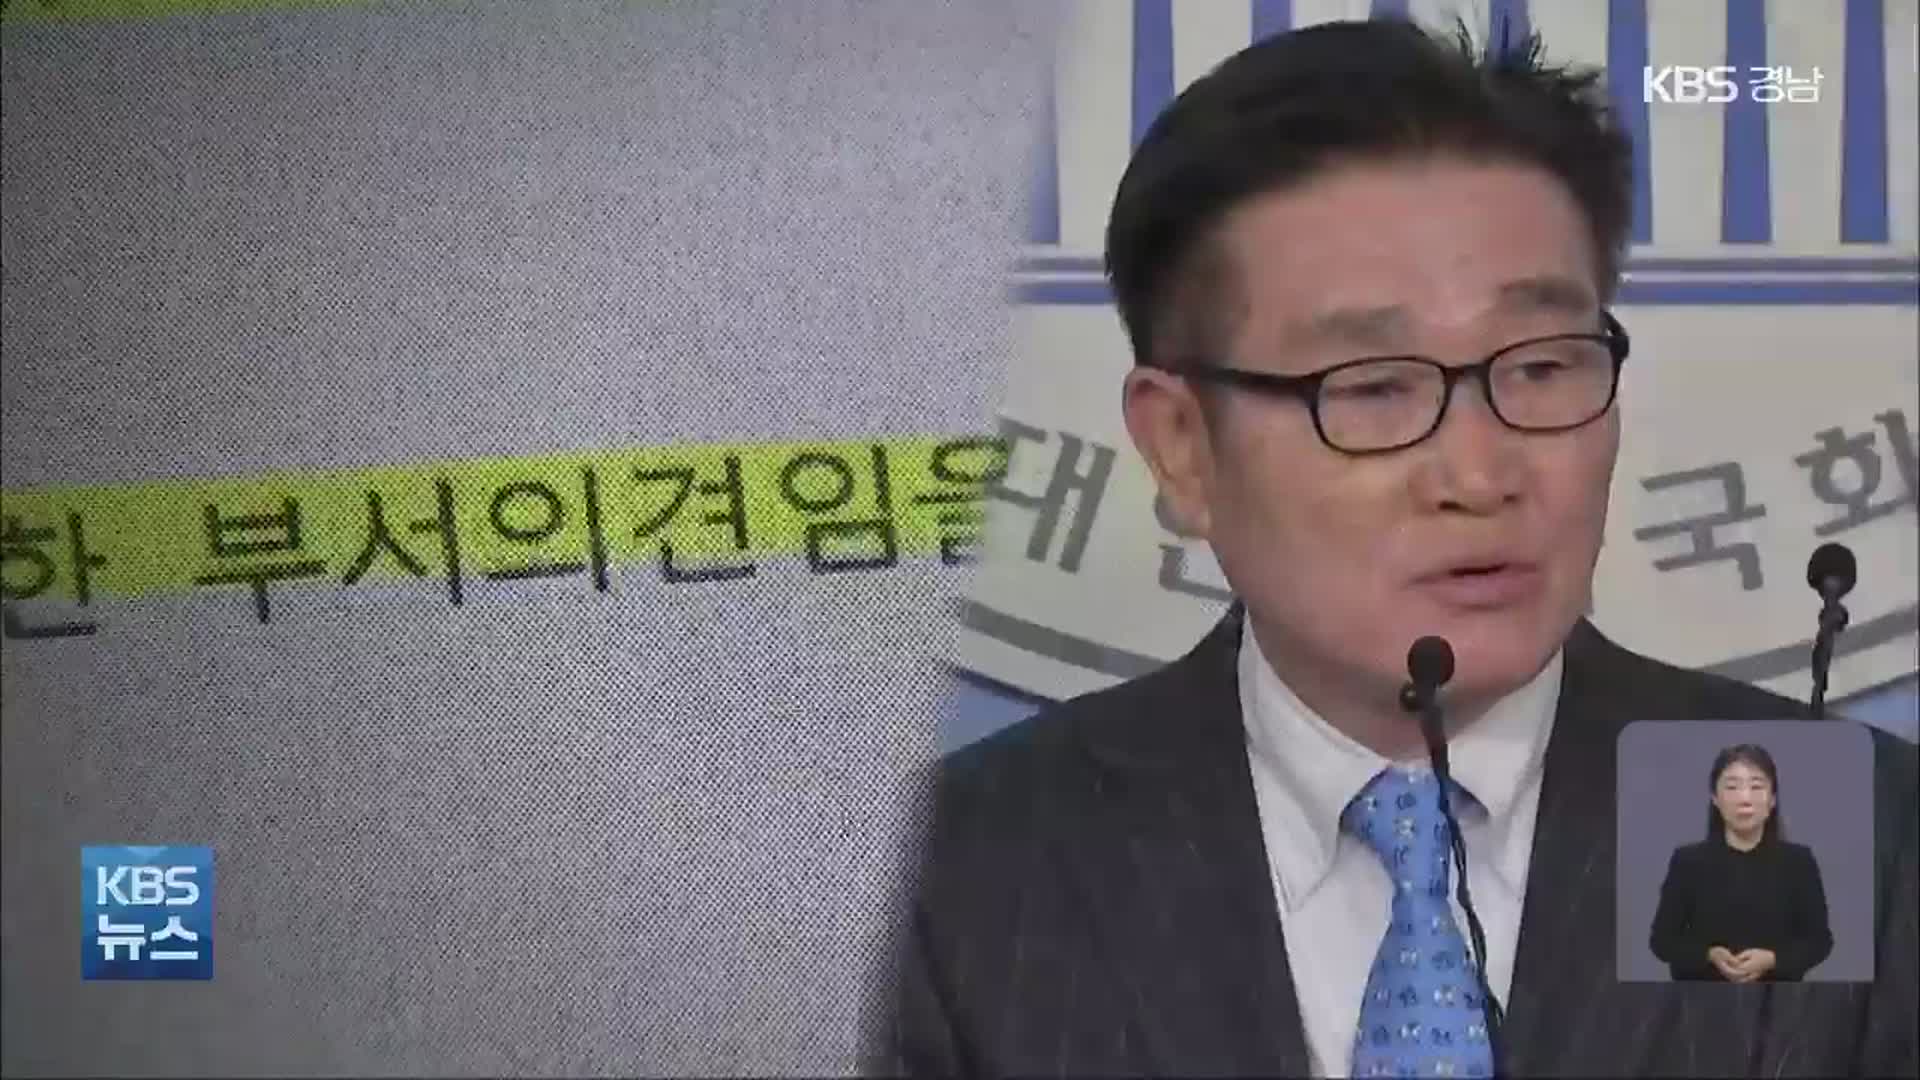 김일권 시장 친인척 업체 줄줄이 계약?…권익위 “행동강령 위반”